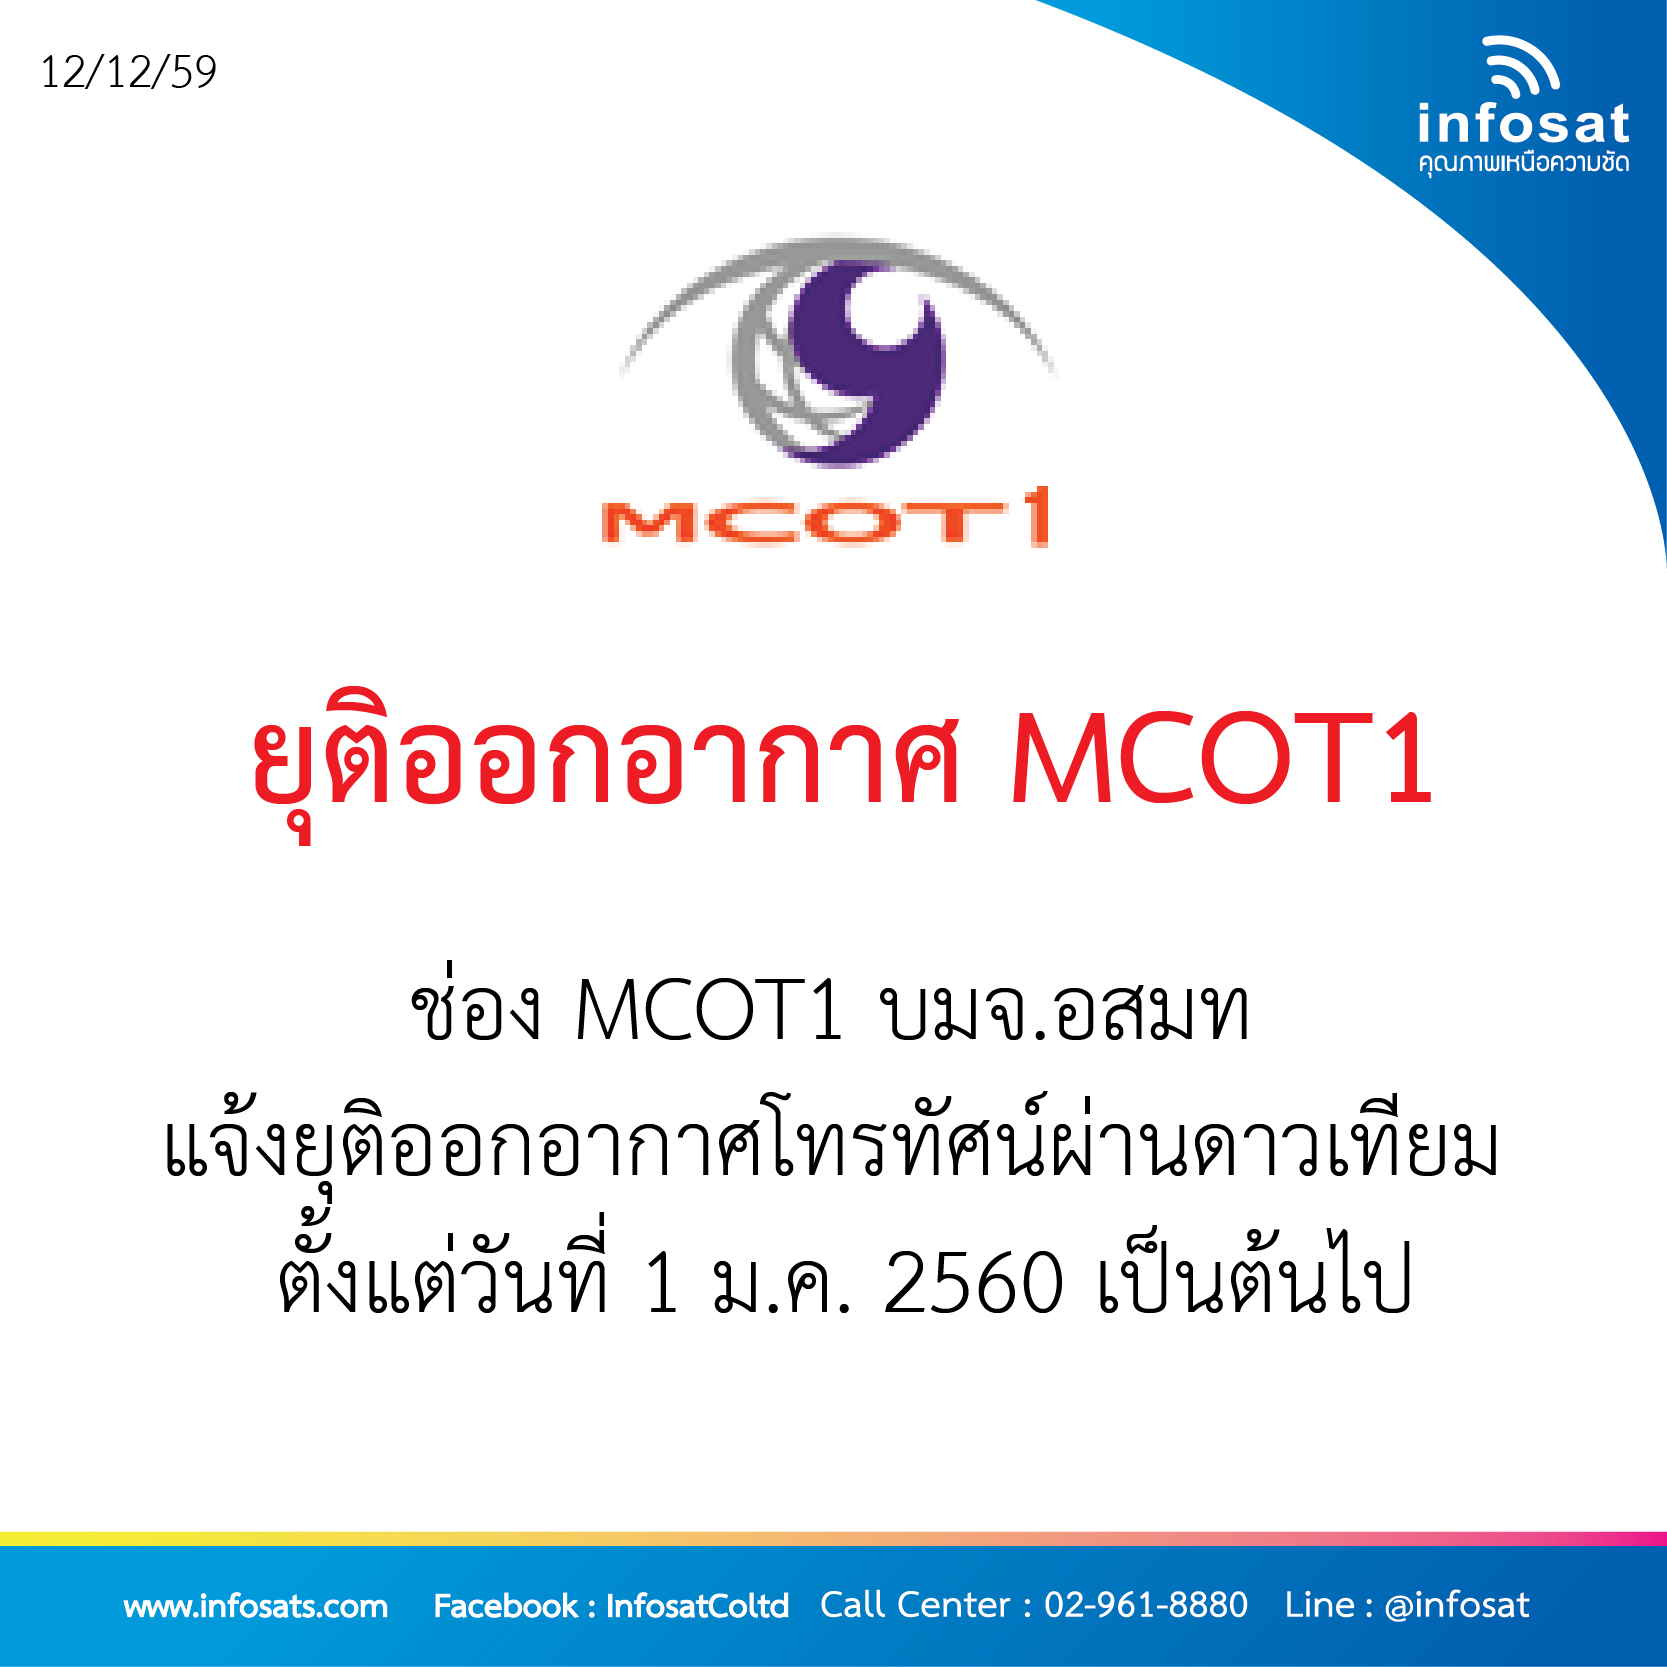 ยุติออกอากศ MCOT1ยุติออกอากาศ MCOT1